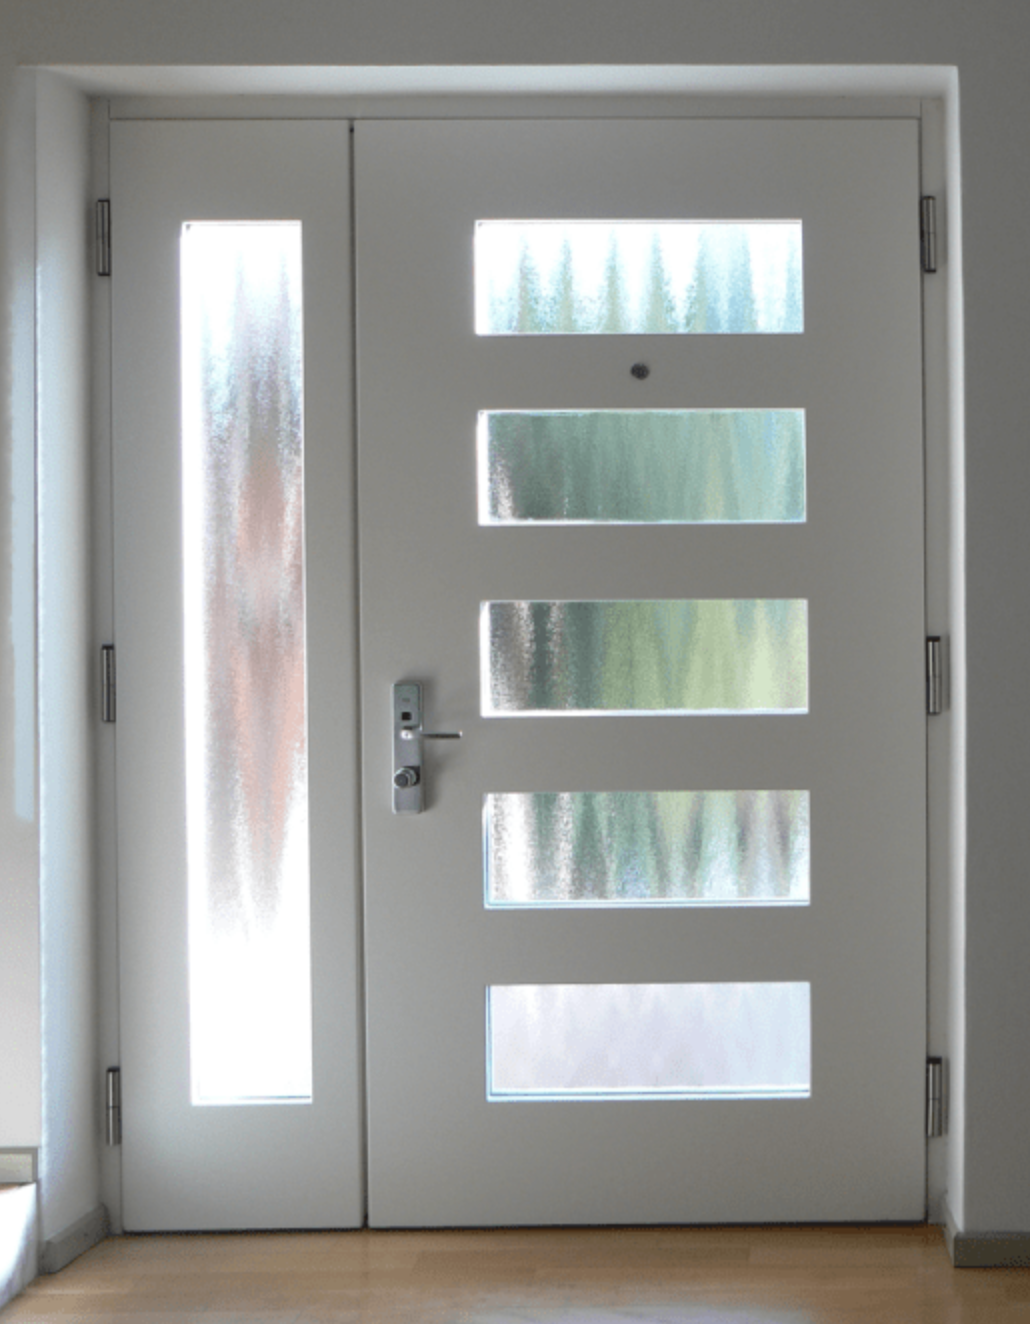 Porte blindate sicure: quale scegliere tra le migliori porta blindata con vetro